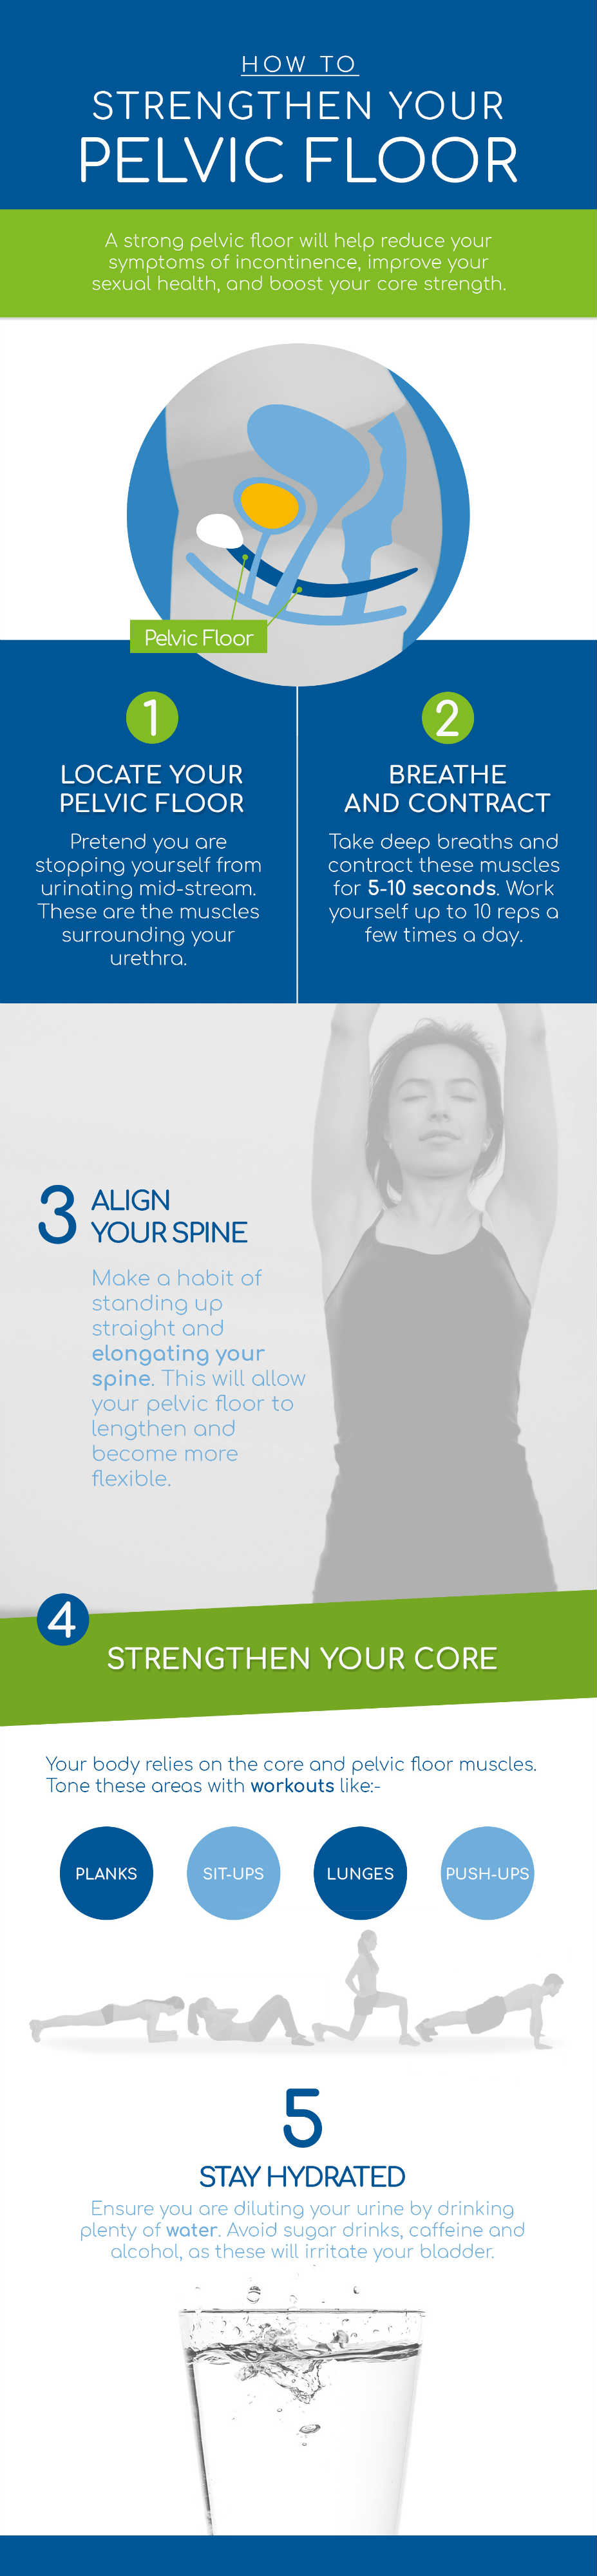 How to strengthen your pelvic floor?